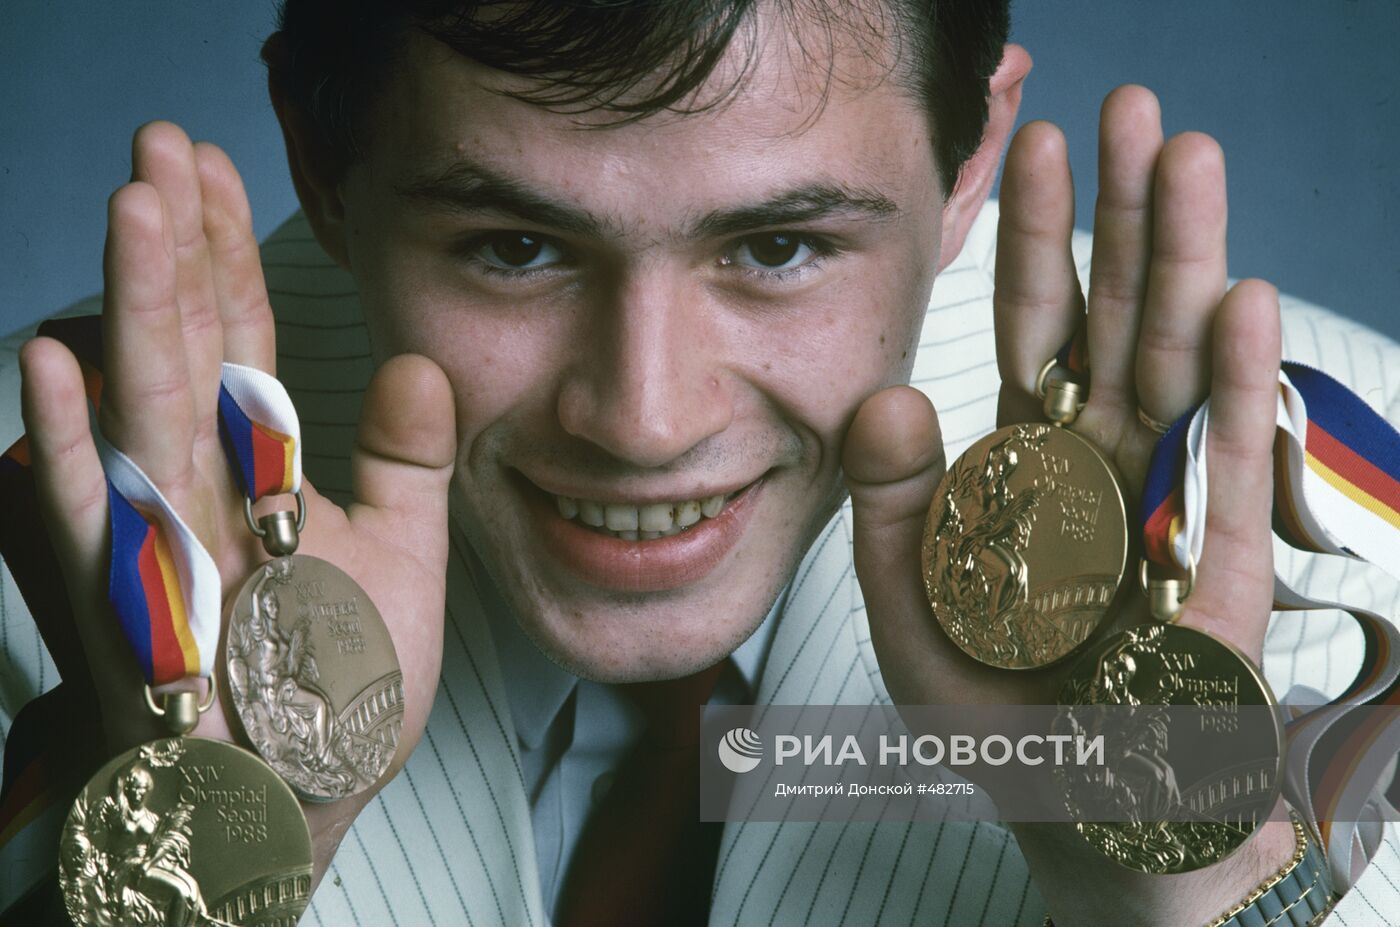 Чемпион по спортивной гимнастике Дмитрий Билозерчев